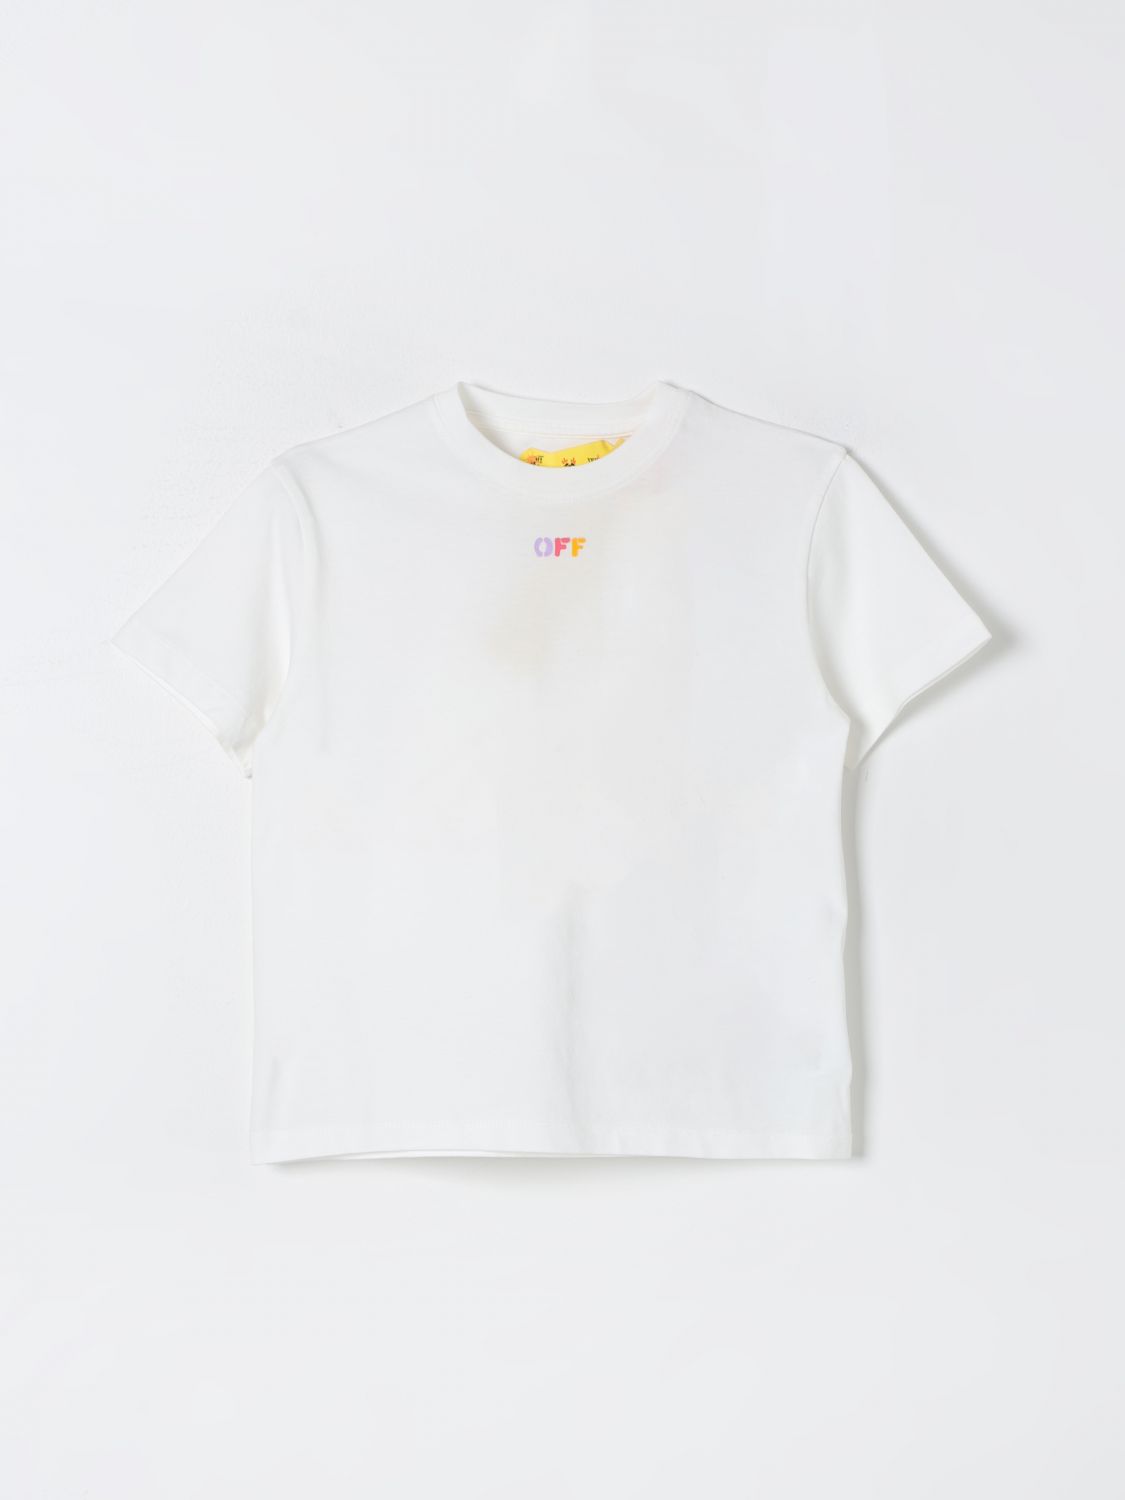 T恤 OFF-WHITE 儿童 颜色 白色